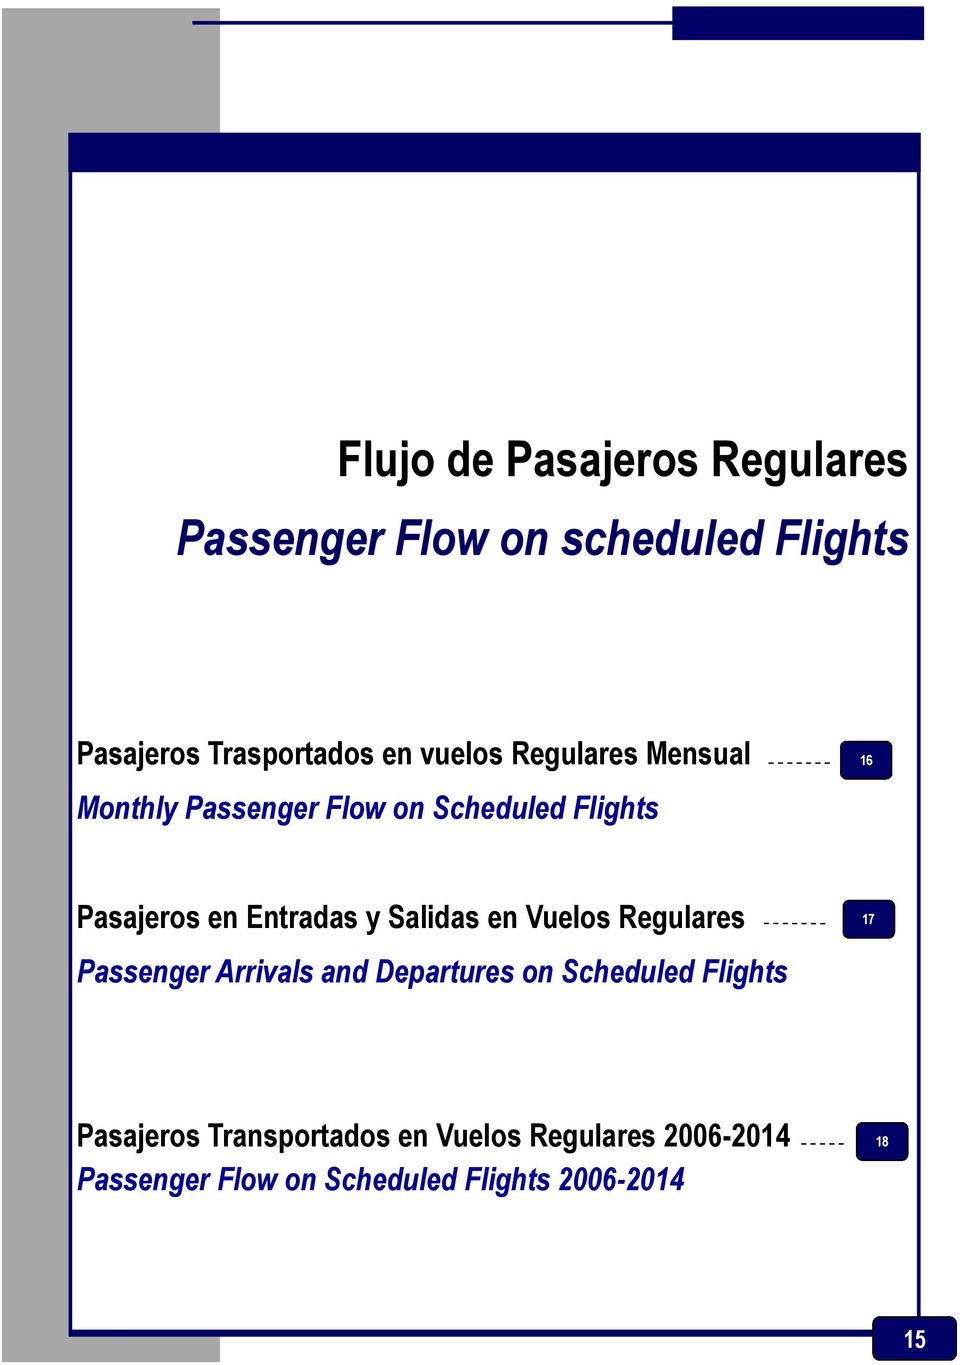 Pasajeros en Entradas y Salidas en Vuelos Regulares Passenger Arrivals and Departures on Scheduled